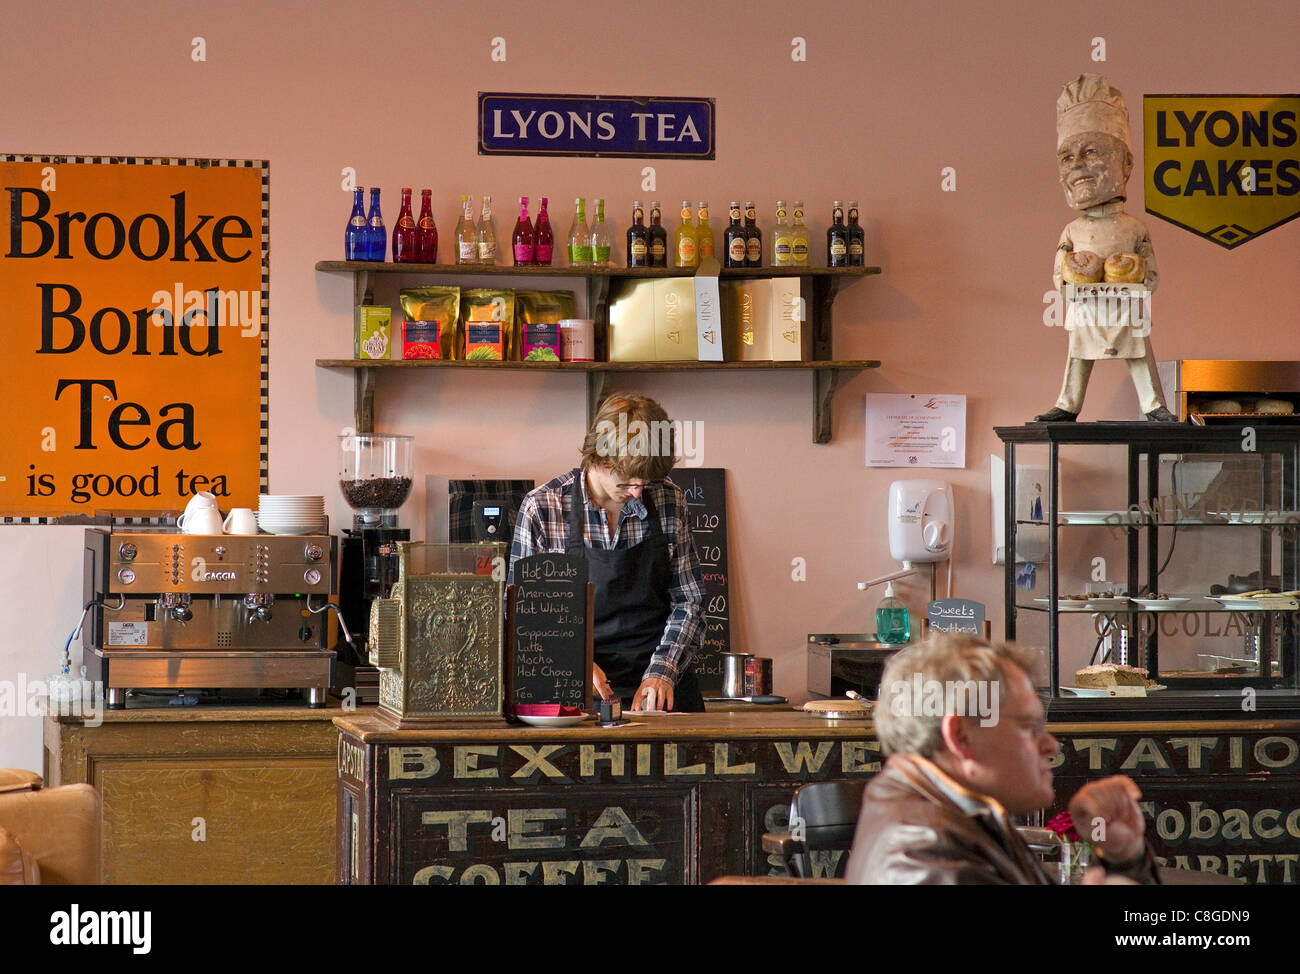 Cafe in der Redundent Bahnhof in West Bexhill mit erhaltenen alten Zeichen Kassen- und moderne Gaggia Espresso-Maschine Stockfoto